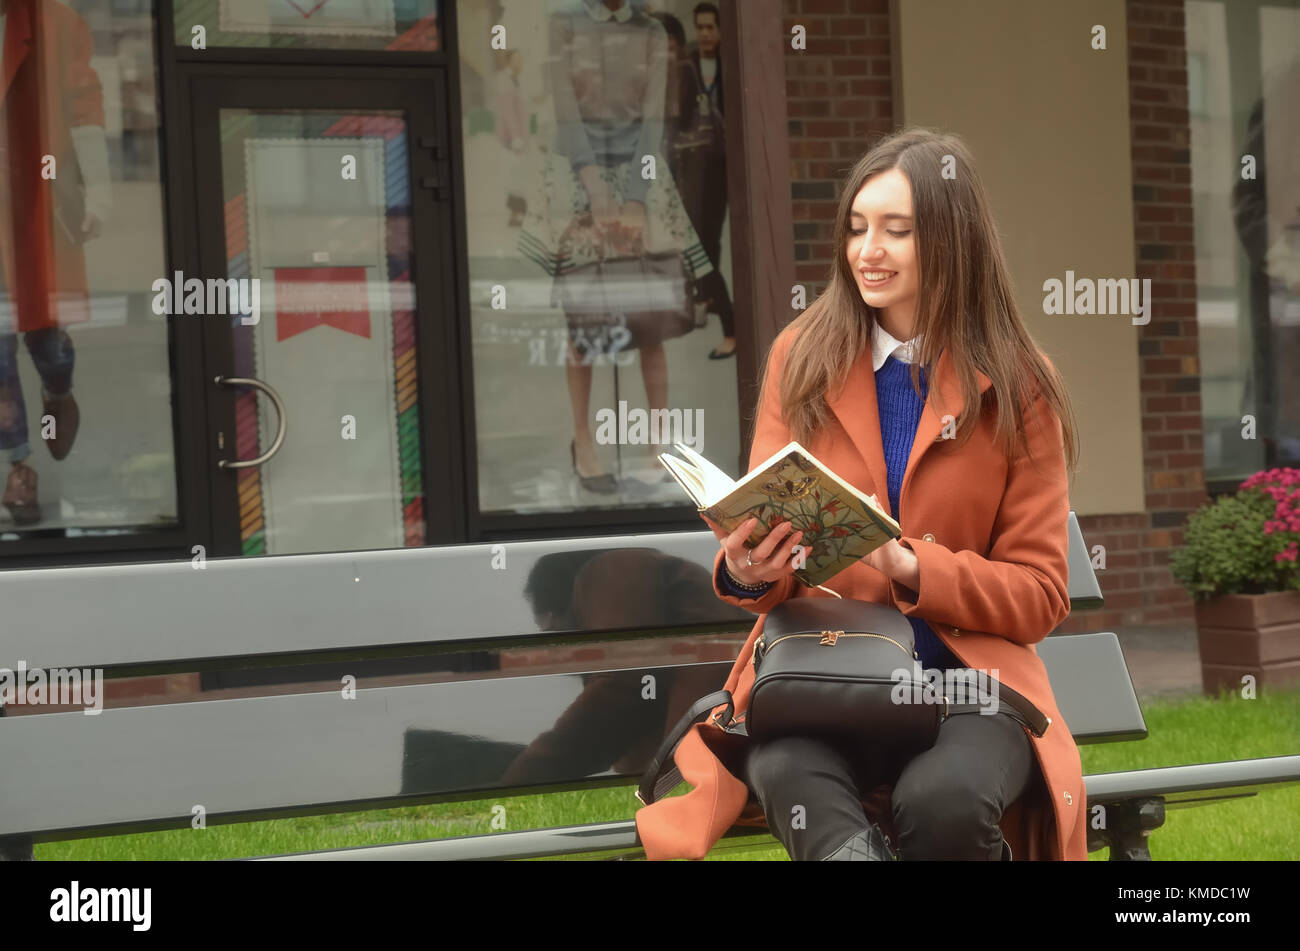 Une belle jeune fille aux cheveux longs assis sur le banc et se balancer un ordinateur portable, en vue de face, derrière les boutiques et d'une pelouse Banque D'Images